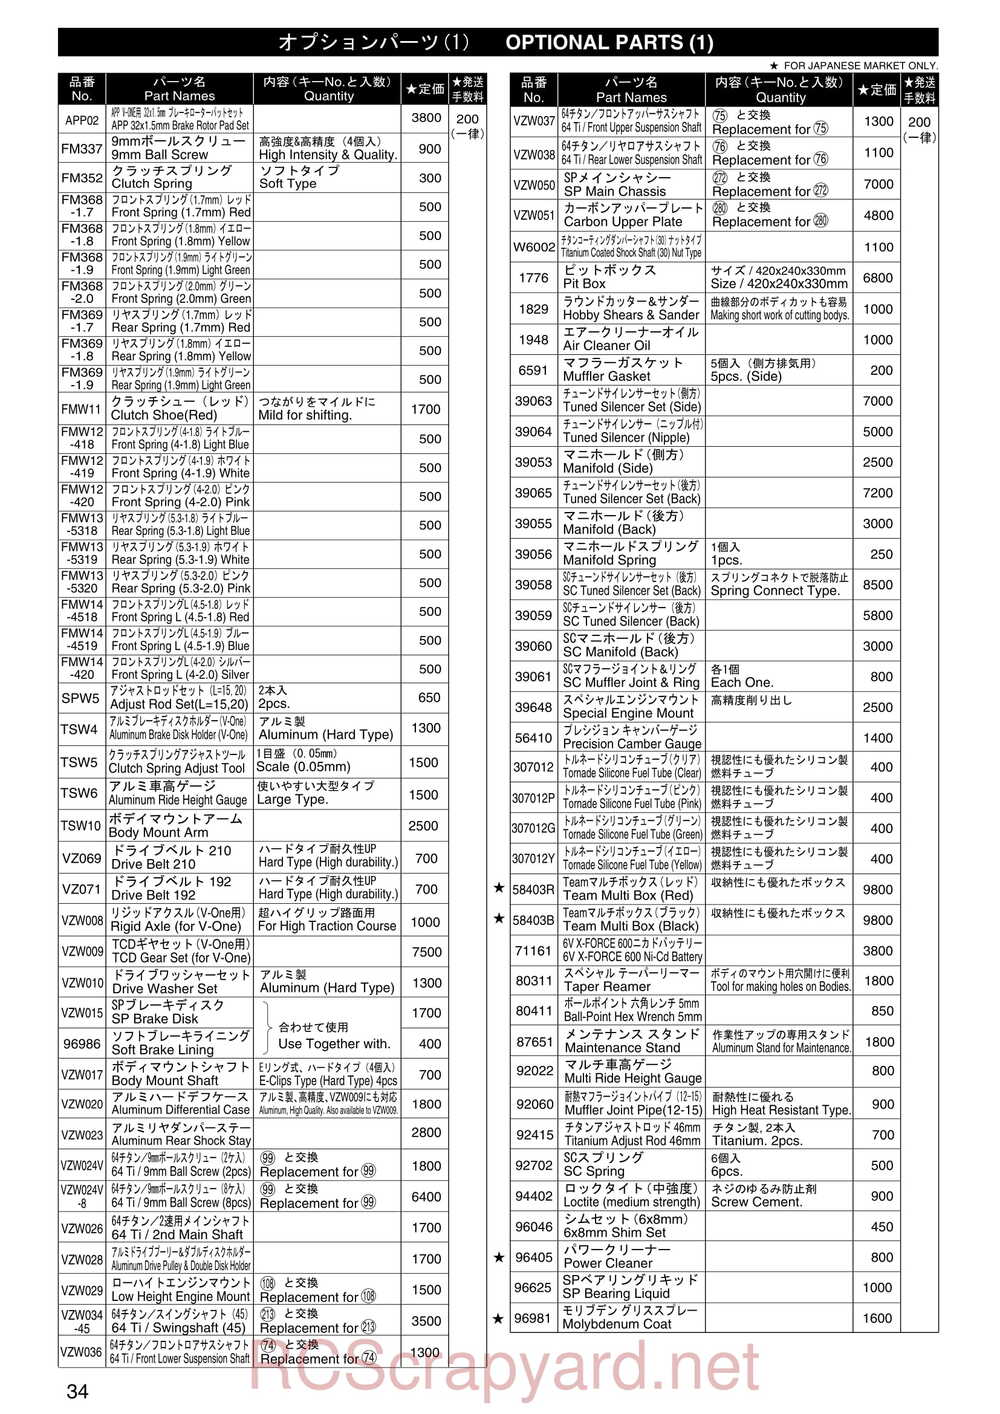 Kyosho - 31255 - V-One RR Evolution - Manual - Page 33